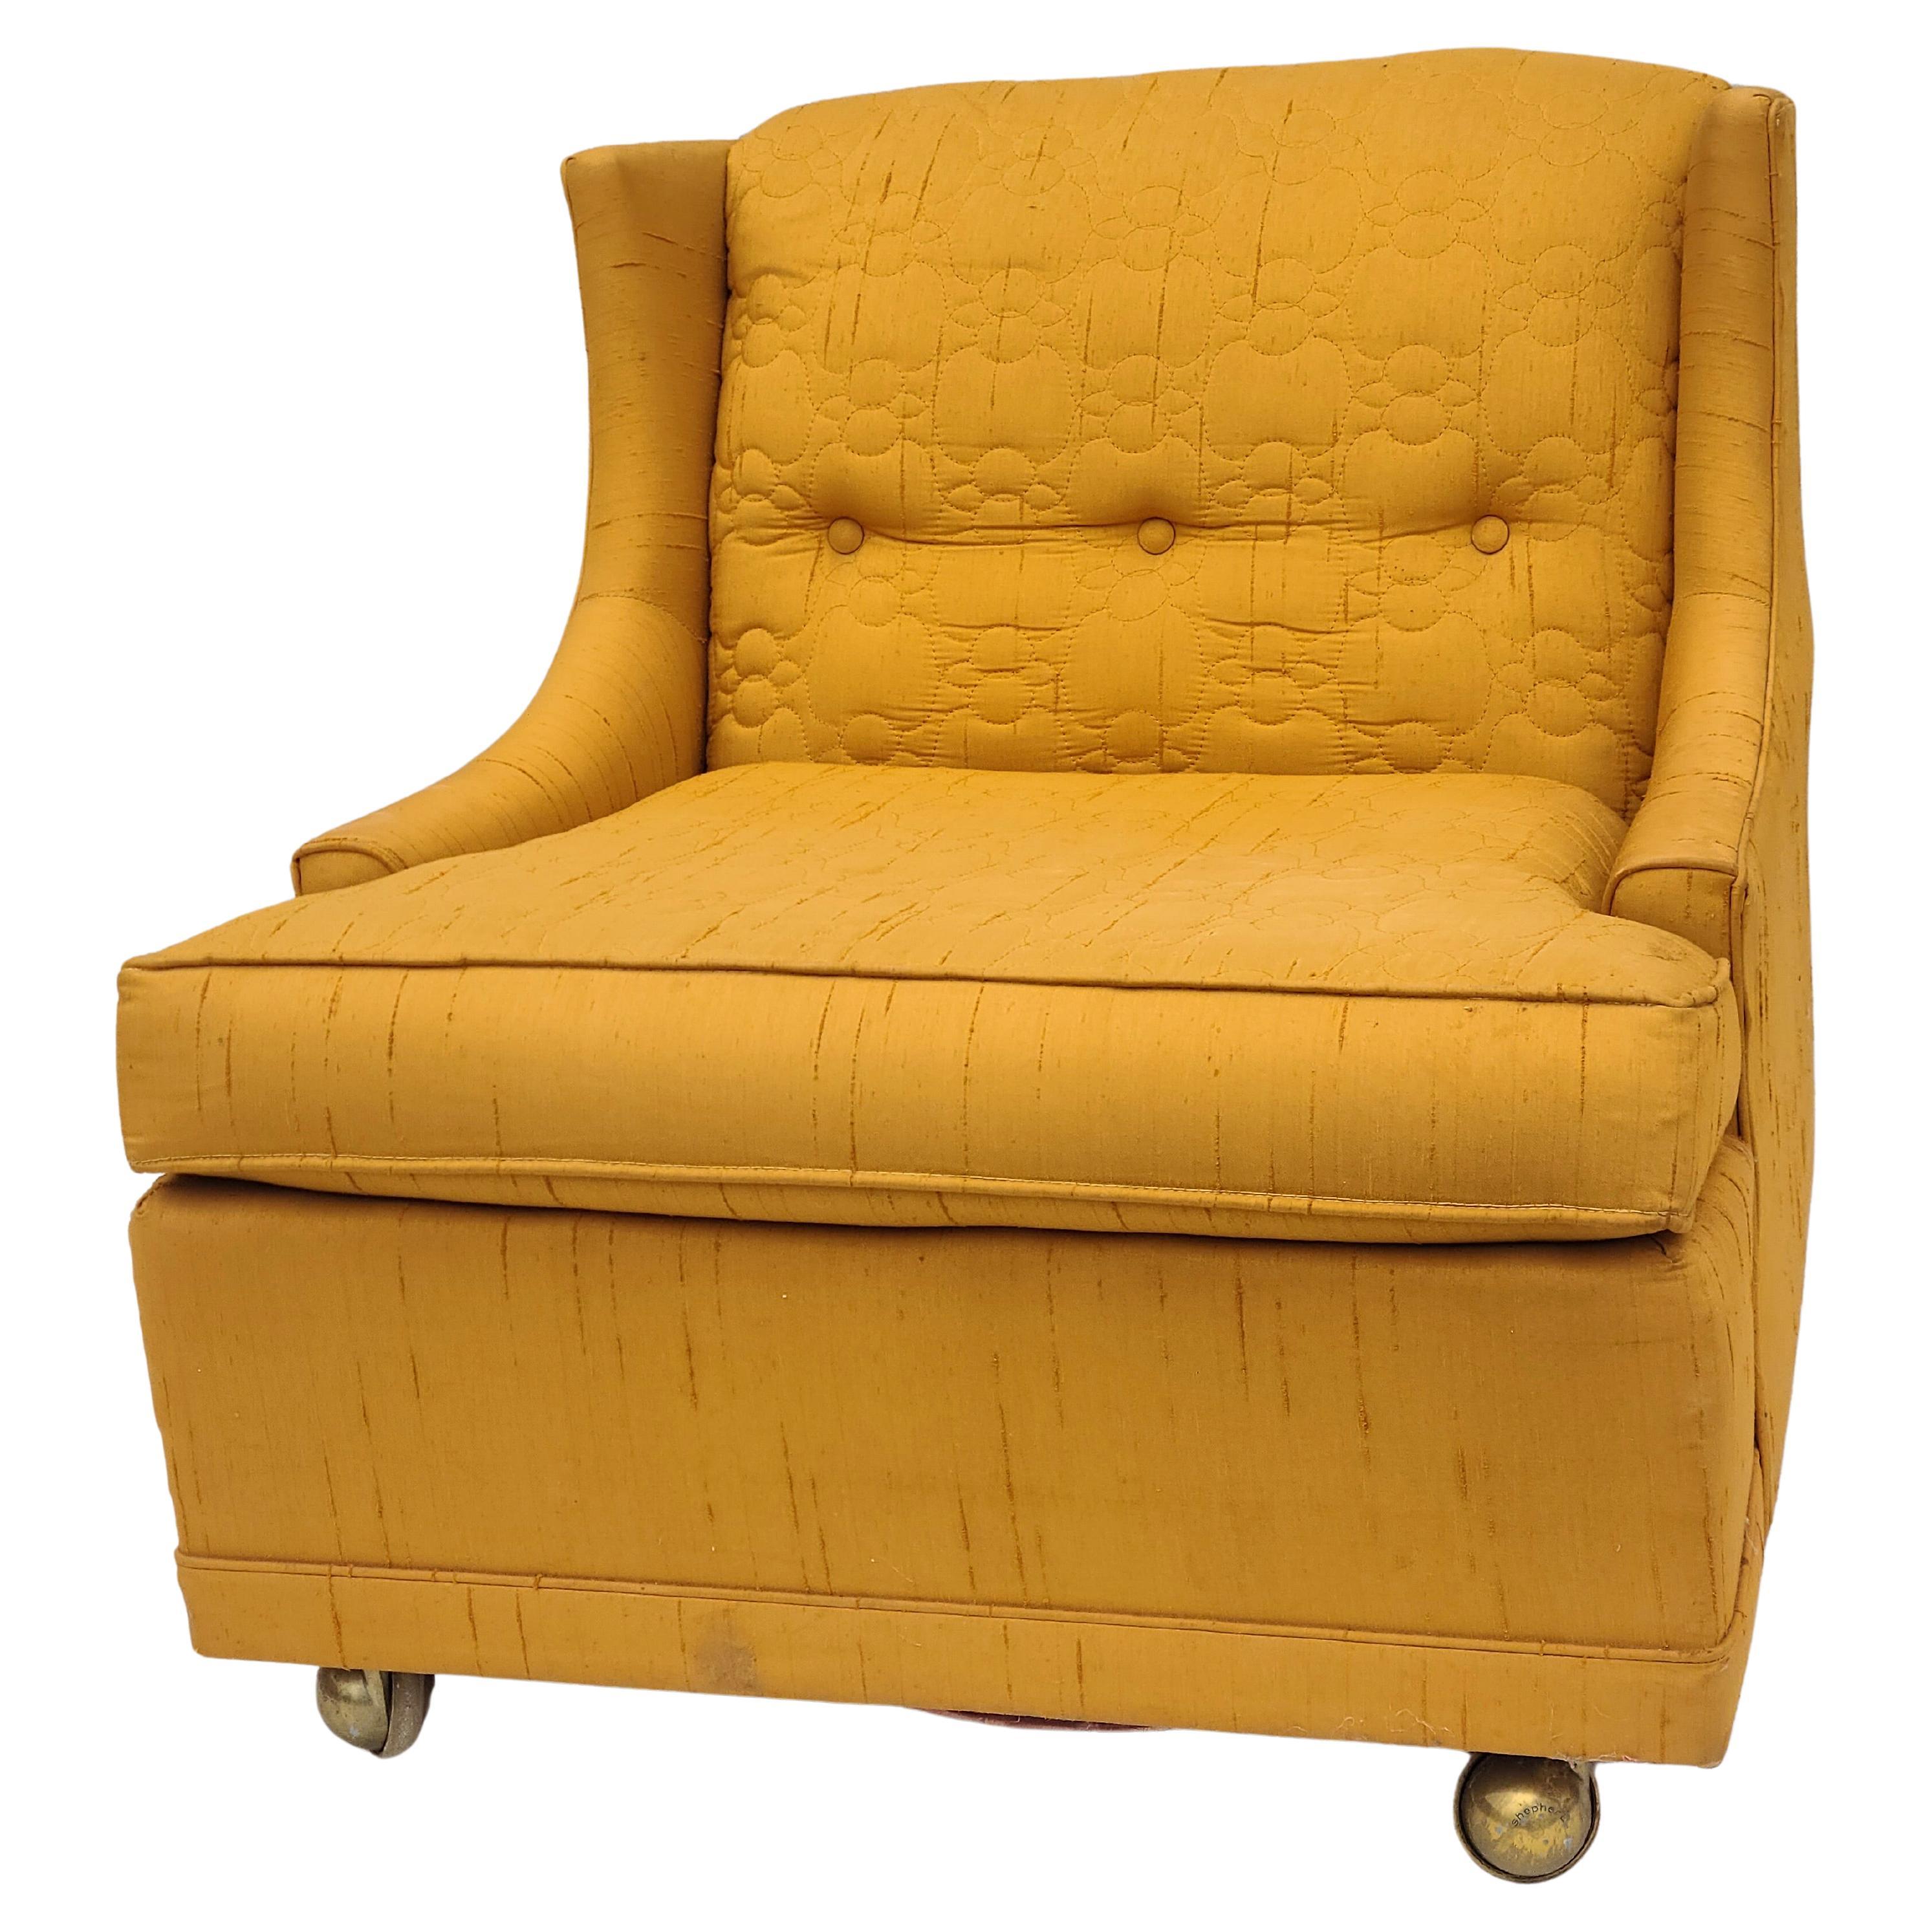 S'il vous plaît n'hésitez pas à atteindre pour l'expédition efficace à votre emplacement.

Petite chaise longue moderne du milieu du siècle par Kroehler.

Tissu d'origine orange citrouille.